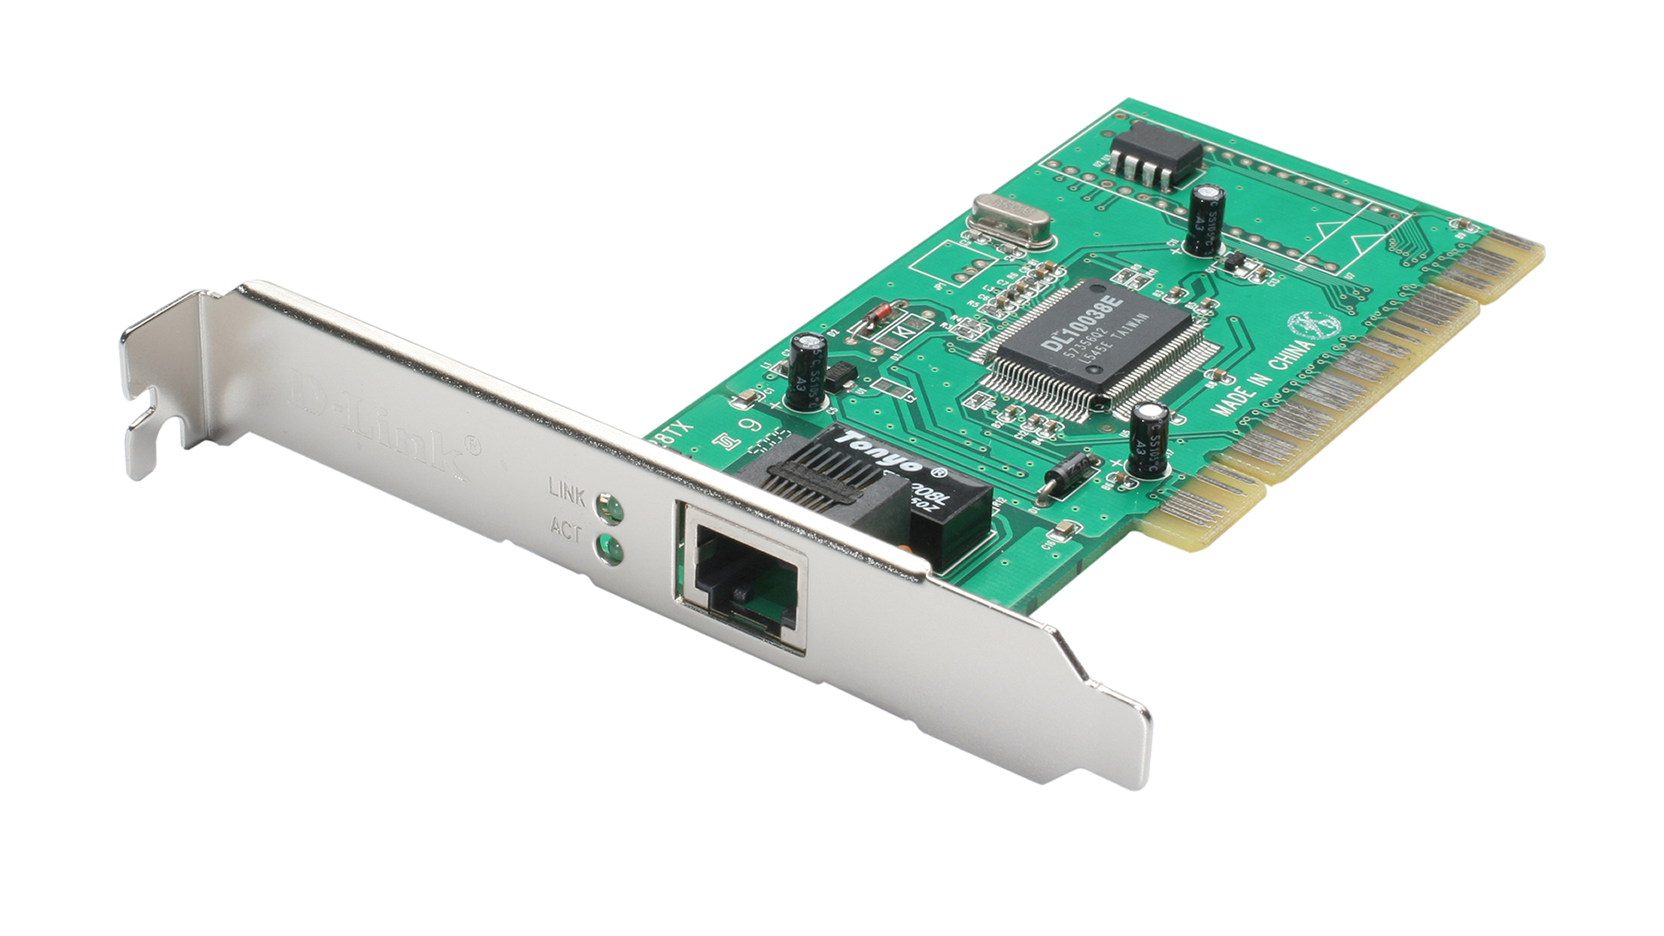 D-link DFE-520tx PCI. DFE-520tx 10/100mbps Ethernet PCI Adapter. D-link DFE-520tx 10base-t/100 Base-ТХ PCI. Адаптер сетевой Ethernet Acorp l-100s PCI. Сетевая карта d link